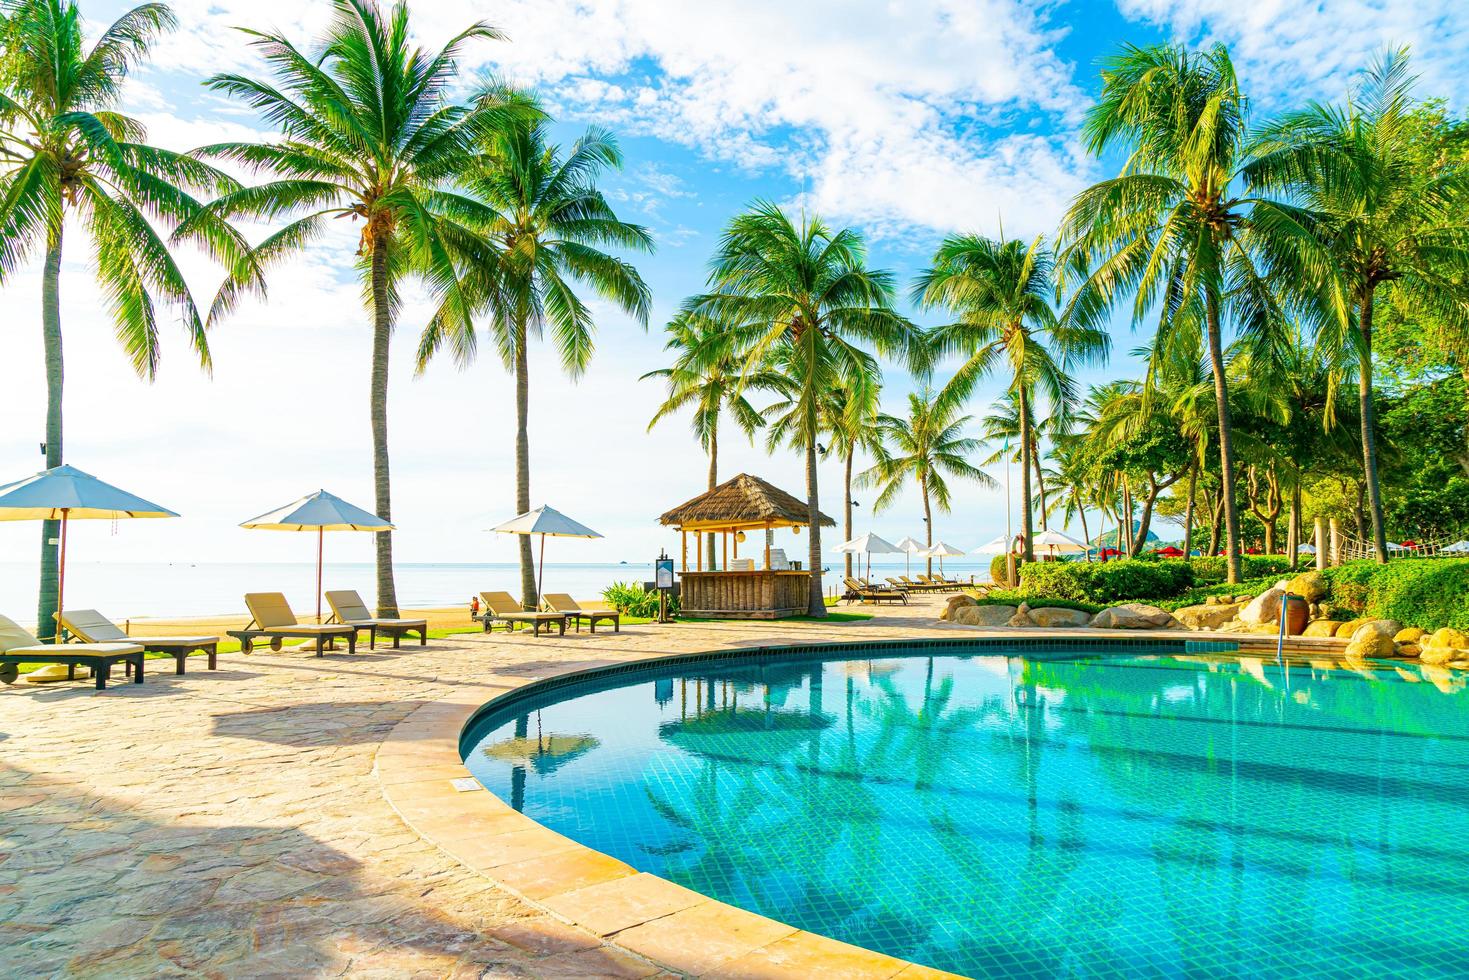 Wunderschöner Luxus-Sonnenschirm und -Stuhl um den Außenpool im Hotel und Resort mit Kokospalme am blauen Himmel foto